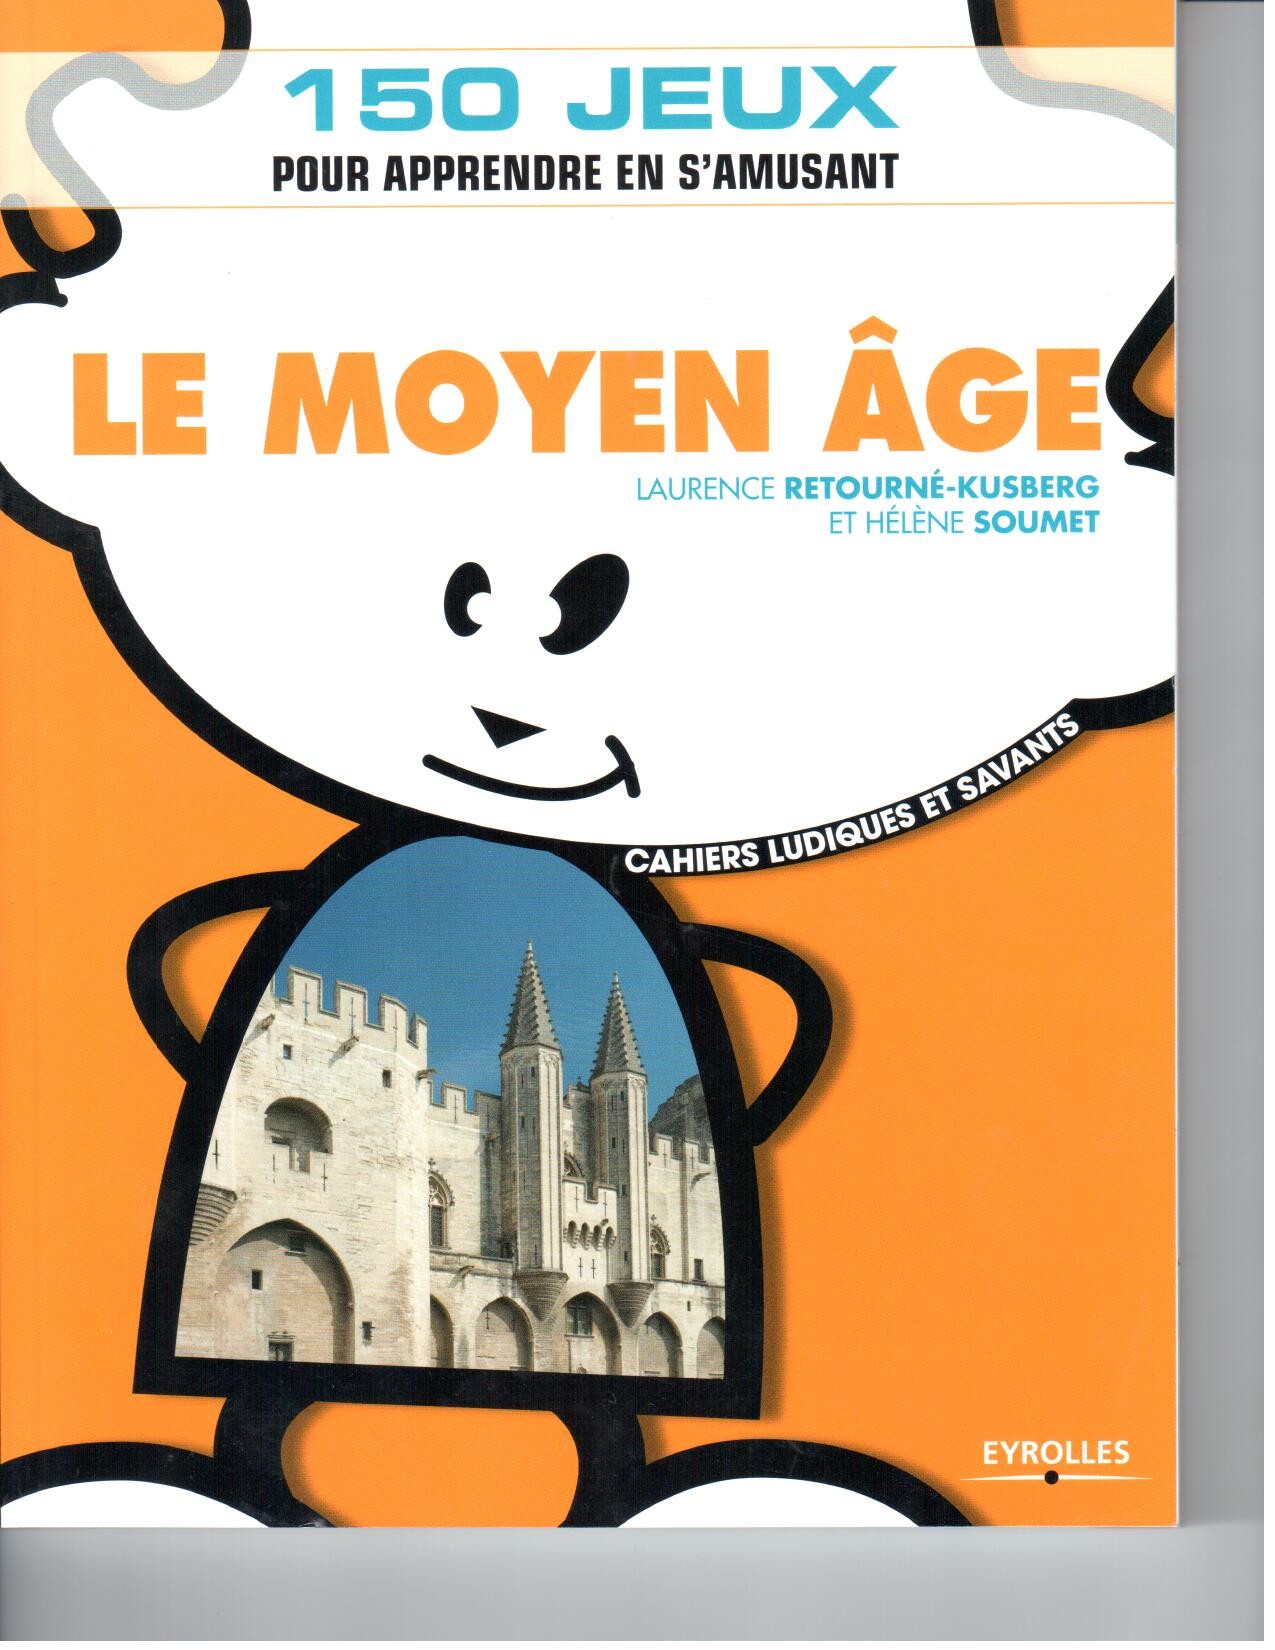 Le Moyen Âge – Cahiers ludiques et savants (Eyrolles, 2011)